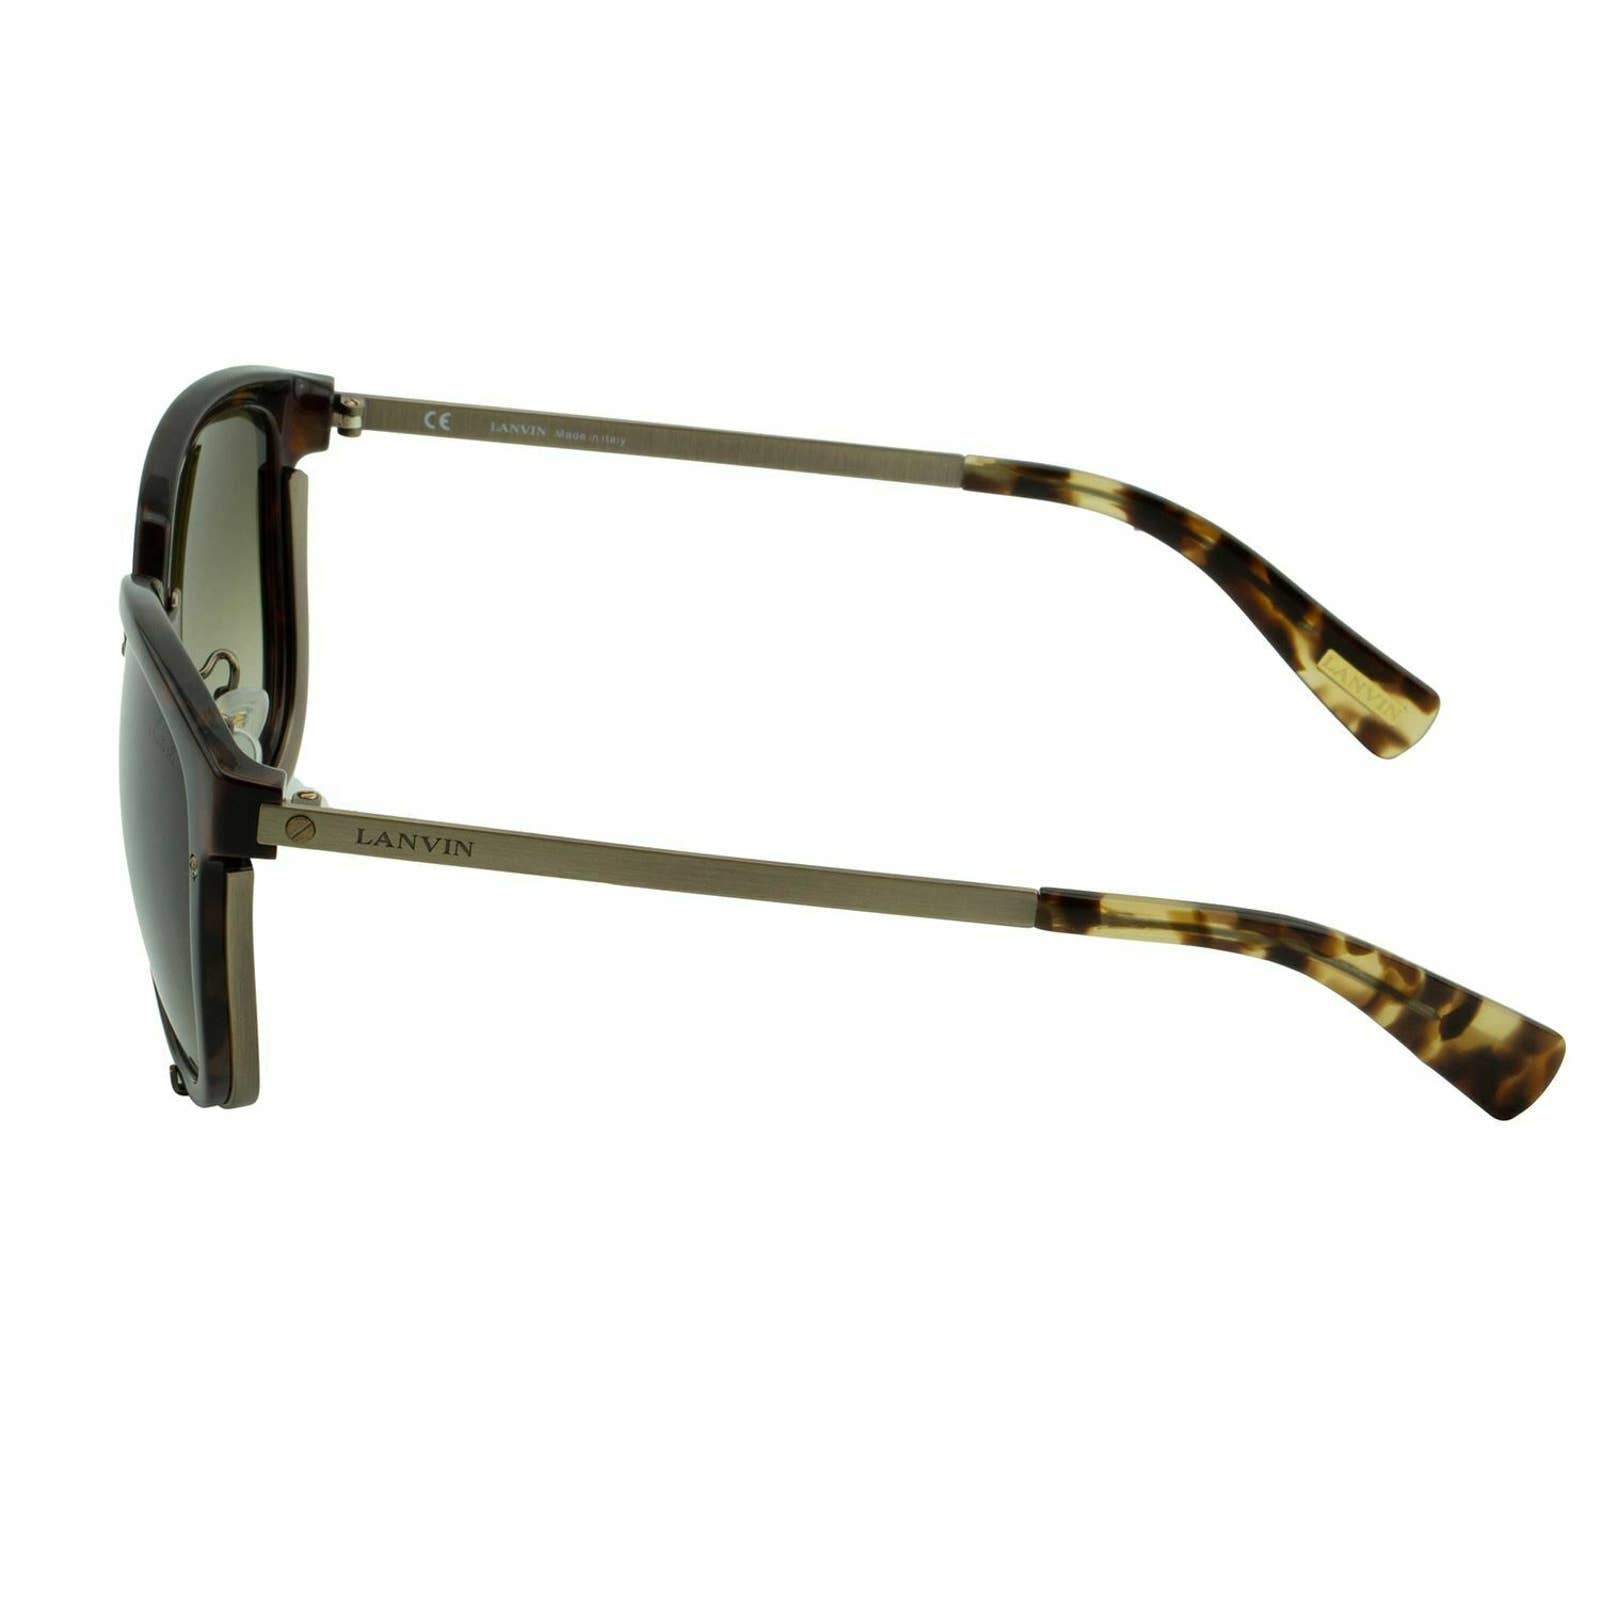 Women Brown Square Cat Eye Sunglasses SLN-046-8G2